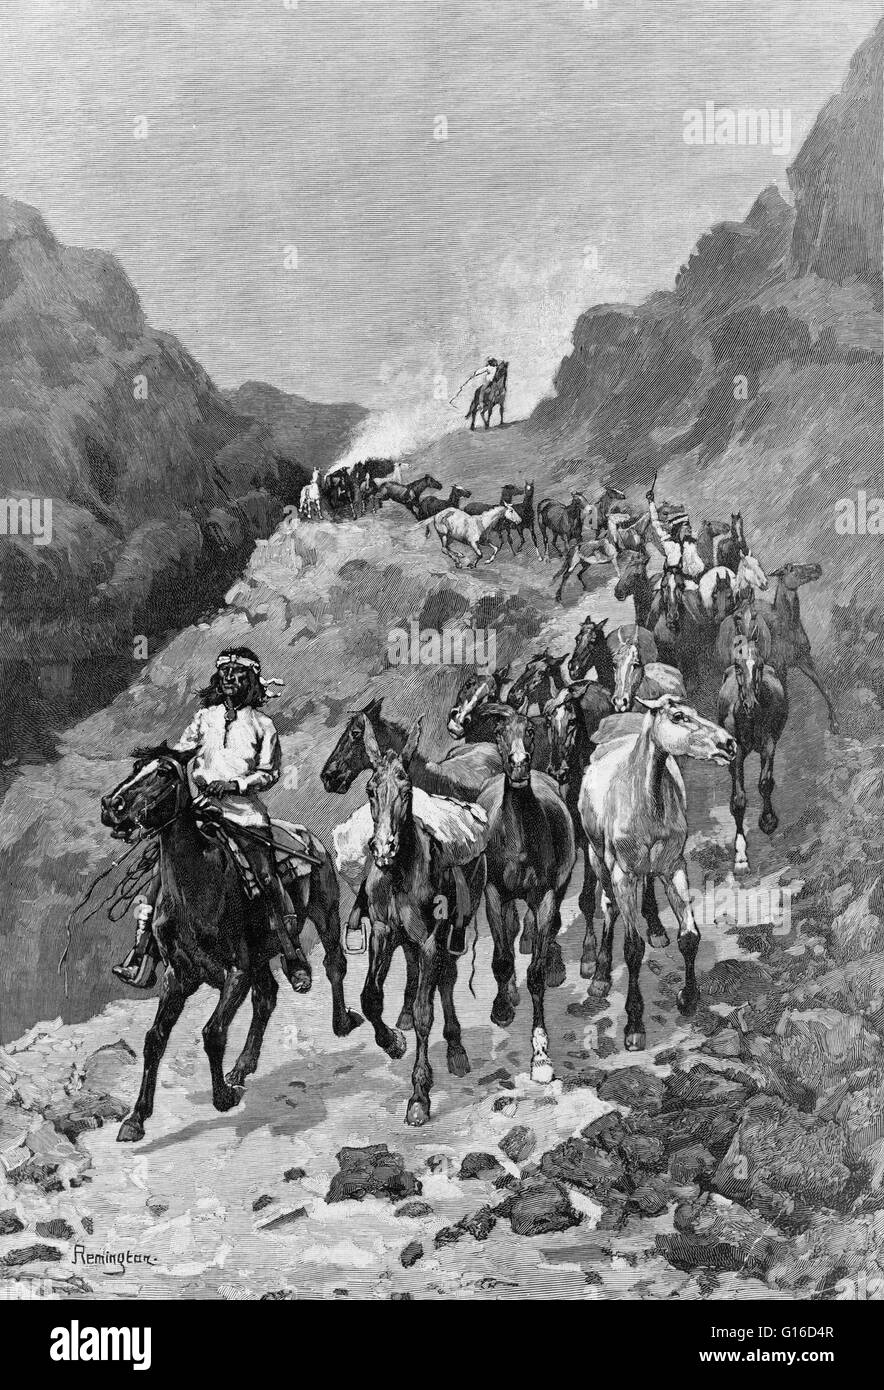 Geronimo und seine Band nach einer Razzia in Mexiko Gravur von Frederic Remington, 1888. Geronimo "einer, der gähnt" (16. Juni 1829 - 17. Februar 1909) war ein indianischer Anführer der Chiricahua Apache kämpfte gegen Mexiko und die Vereinigten Stat Stockfoto